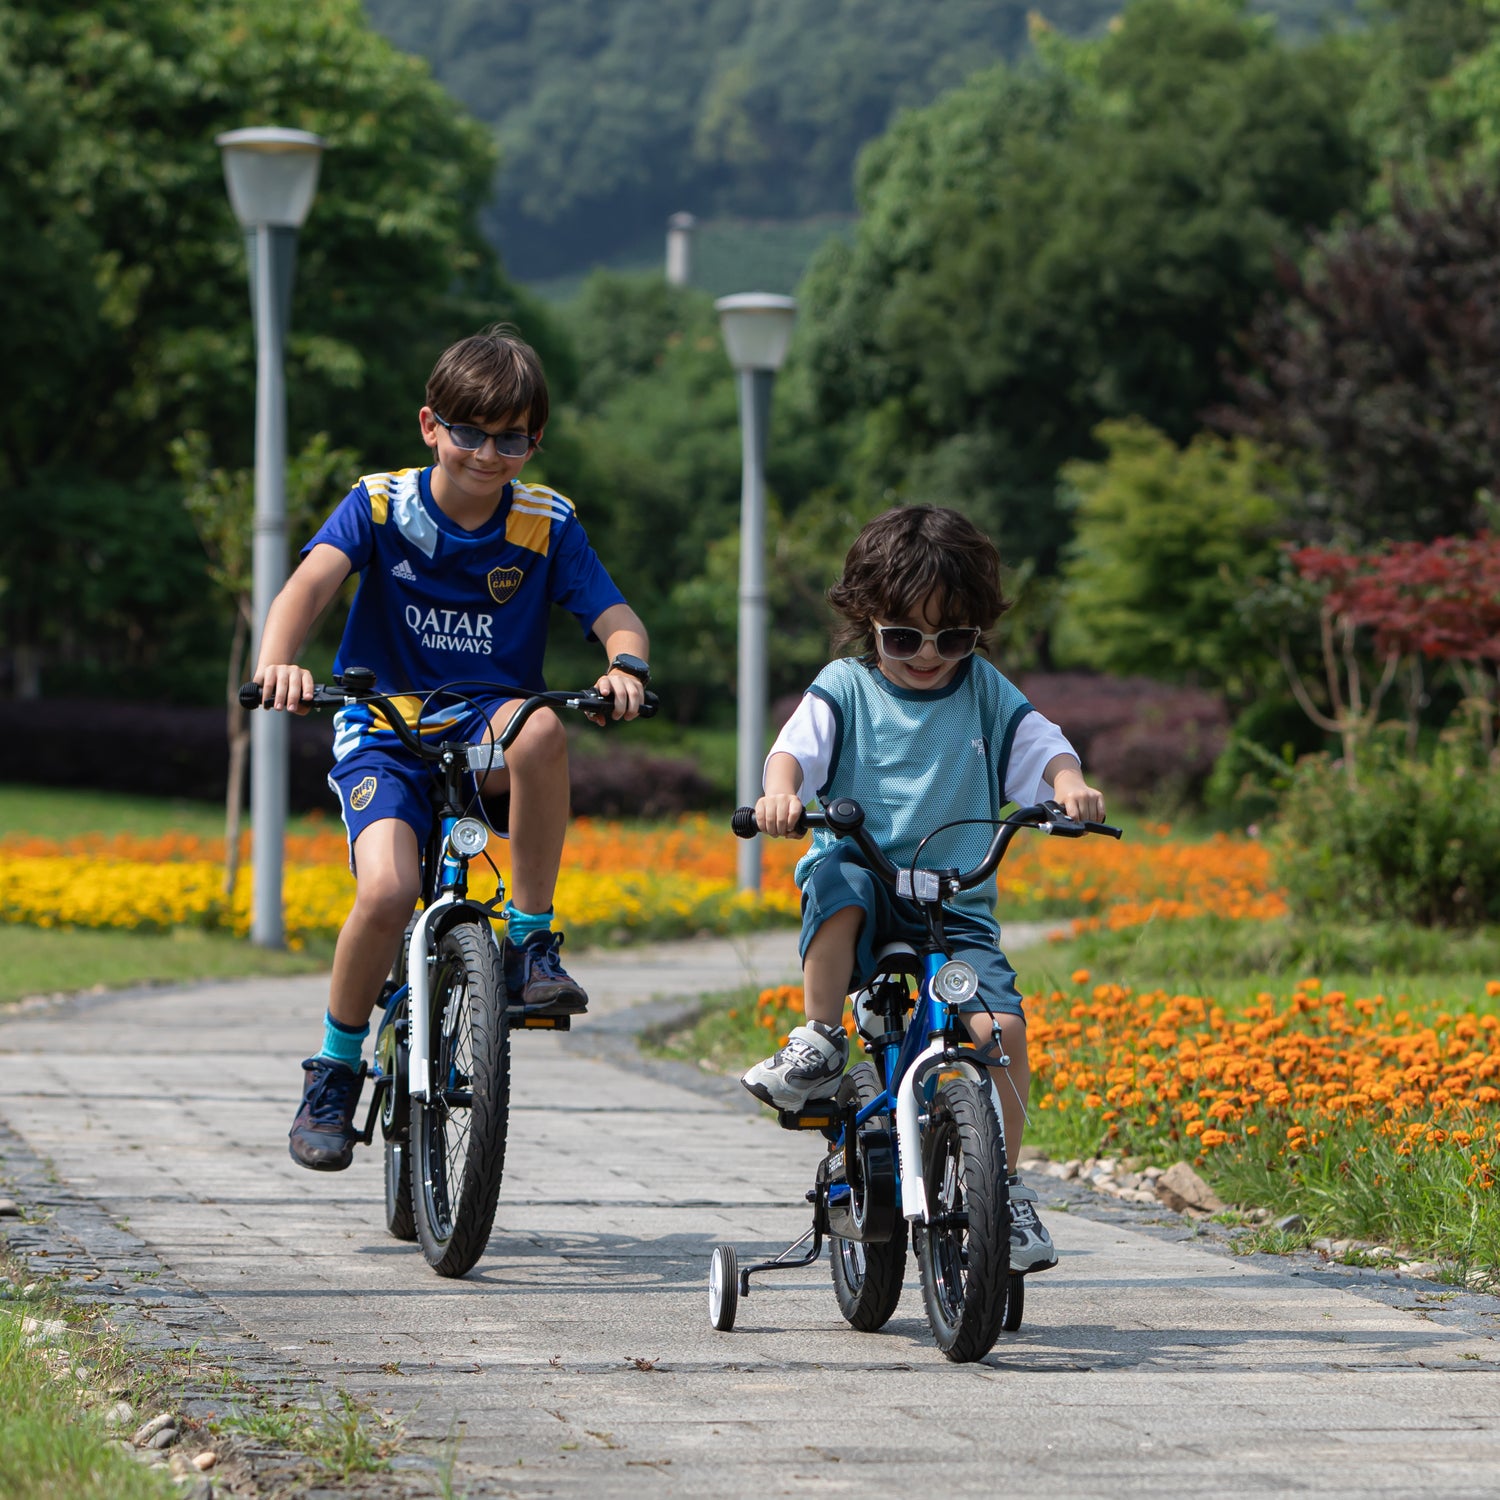 Glerc 12-20 Kids Bike with Lamp-Fantacy – GLERC BIKES